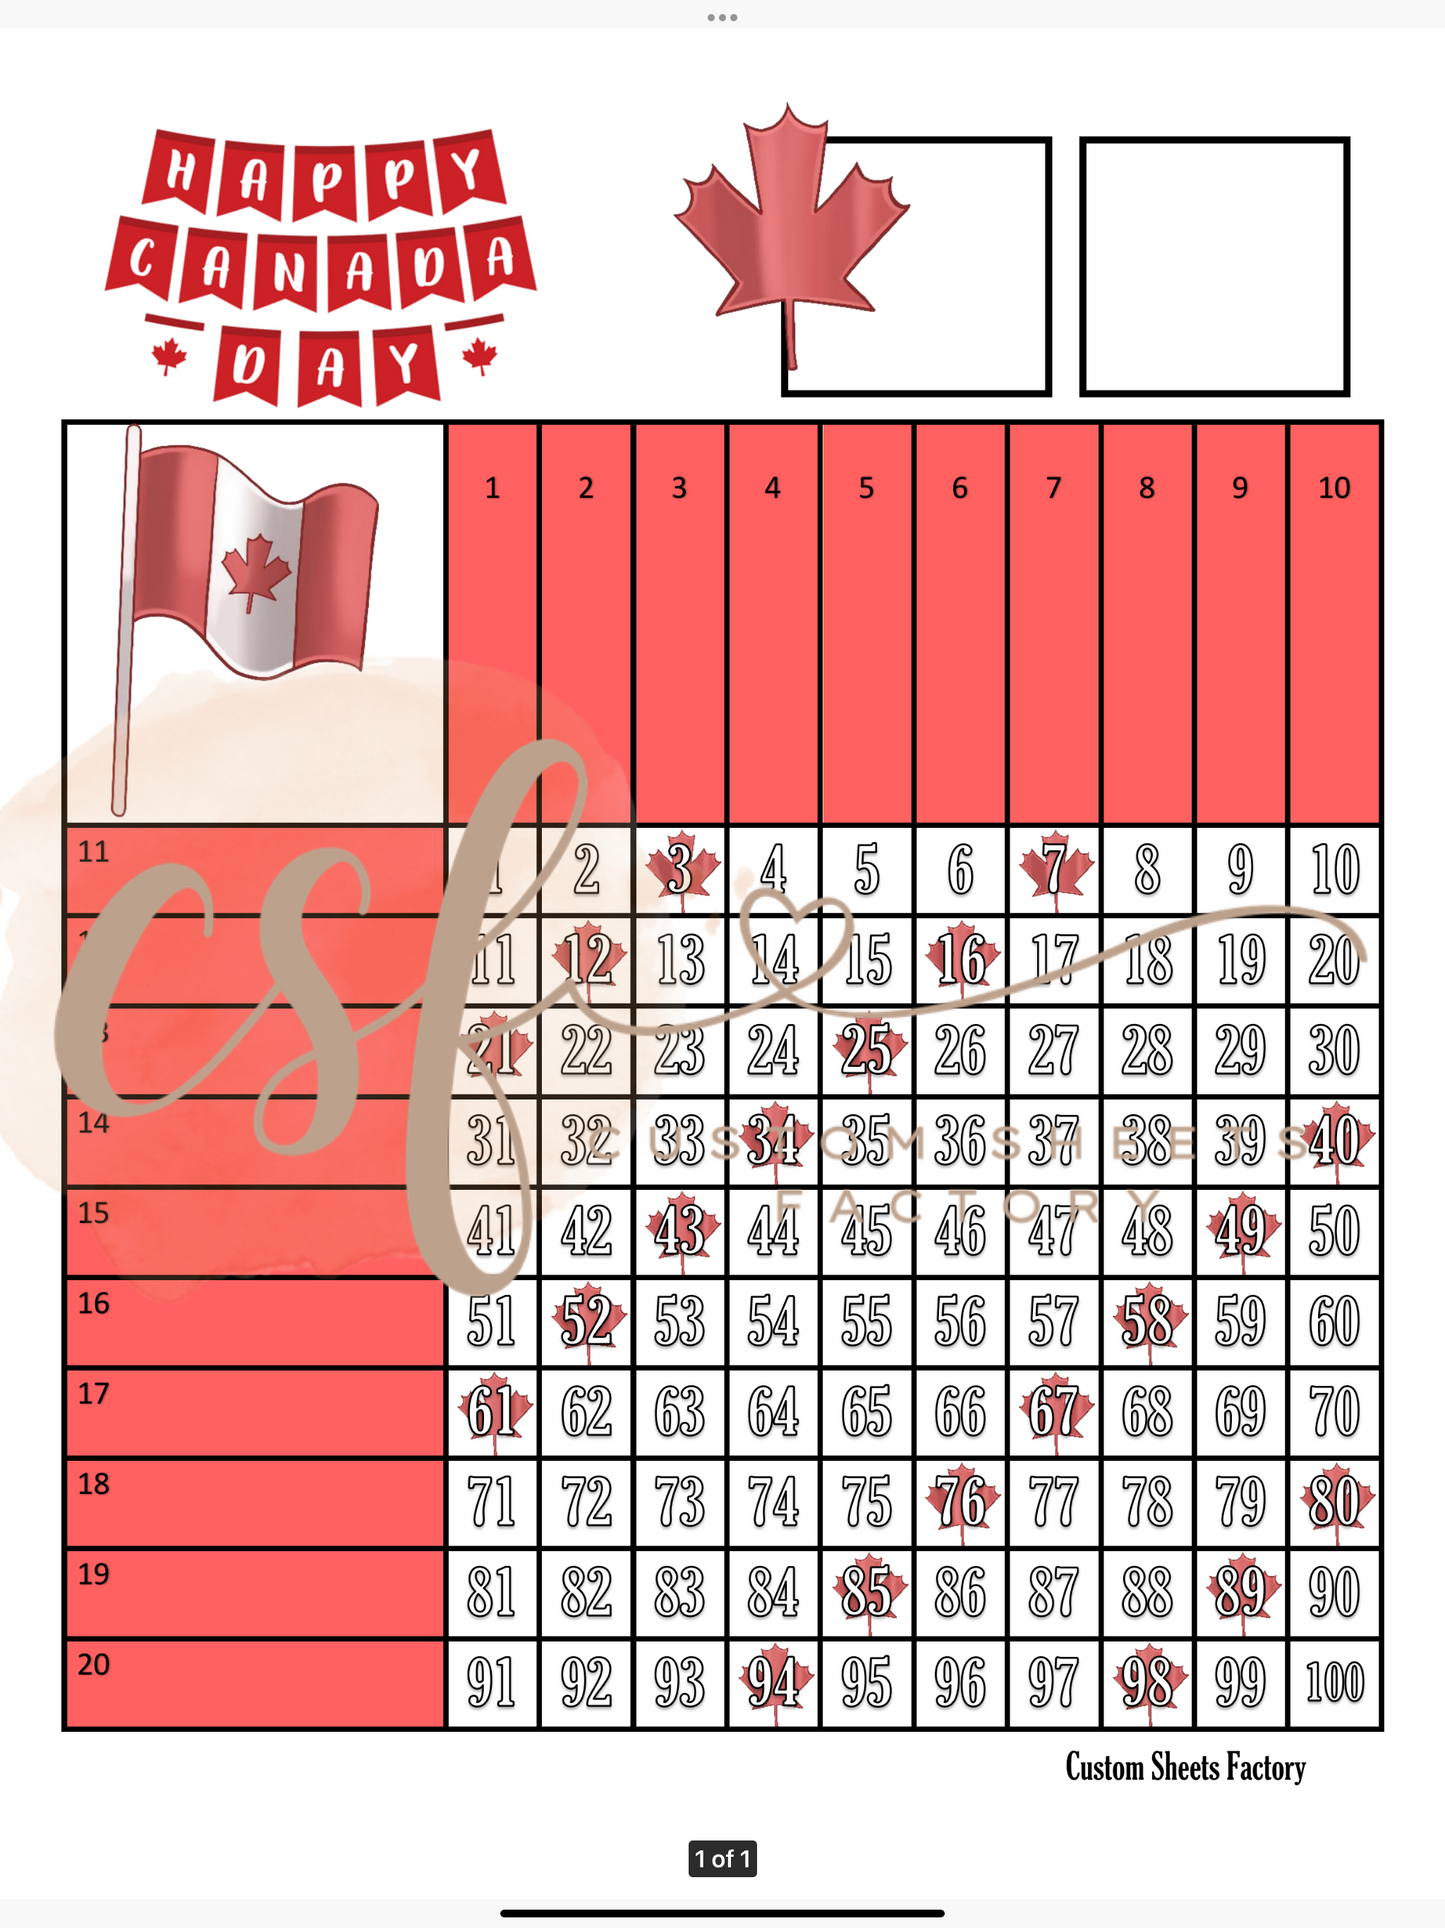 Happy Canada Day - Grid - 100